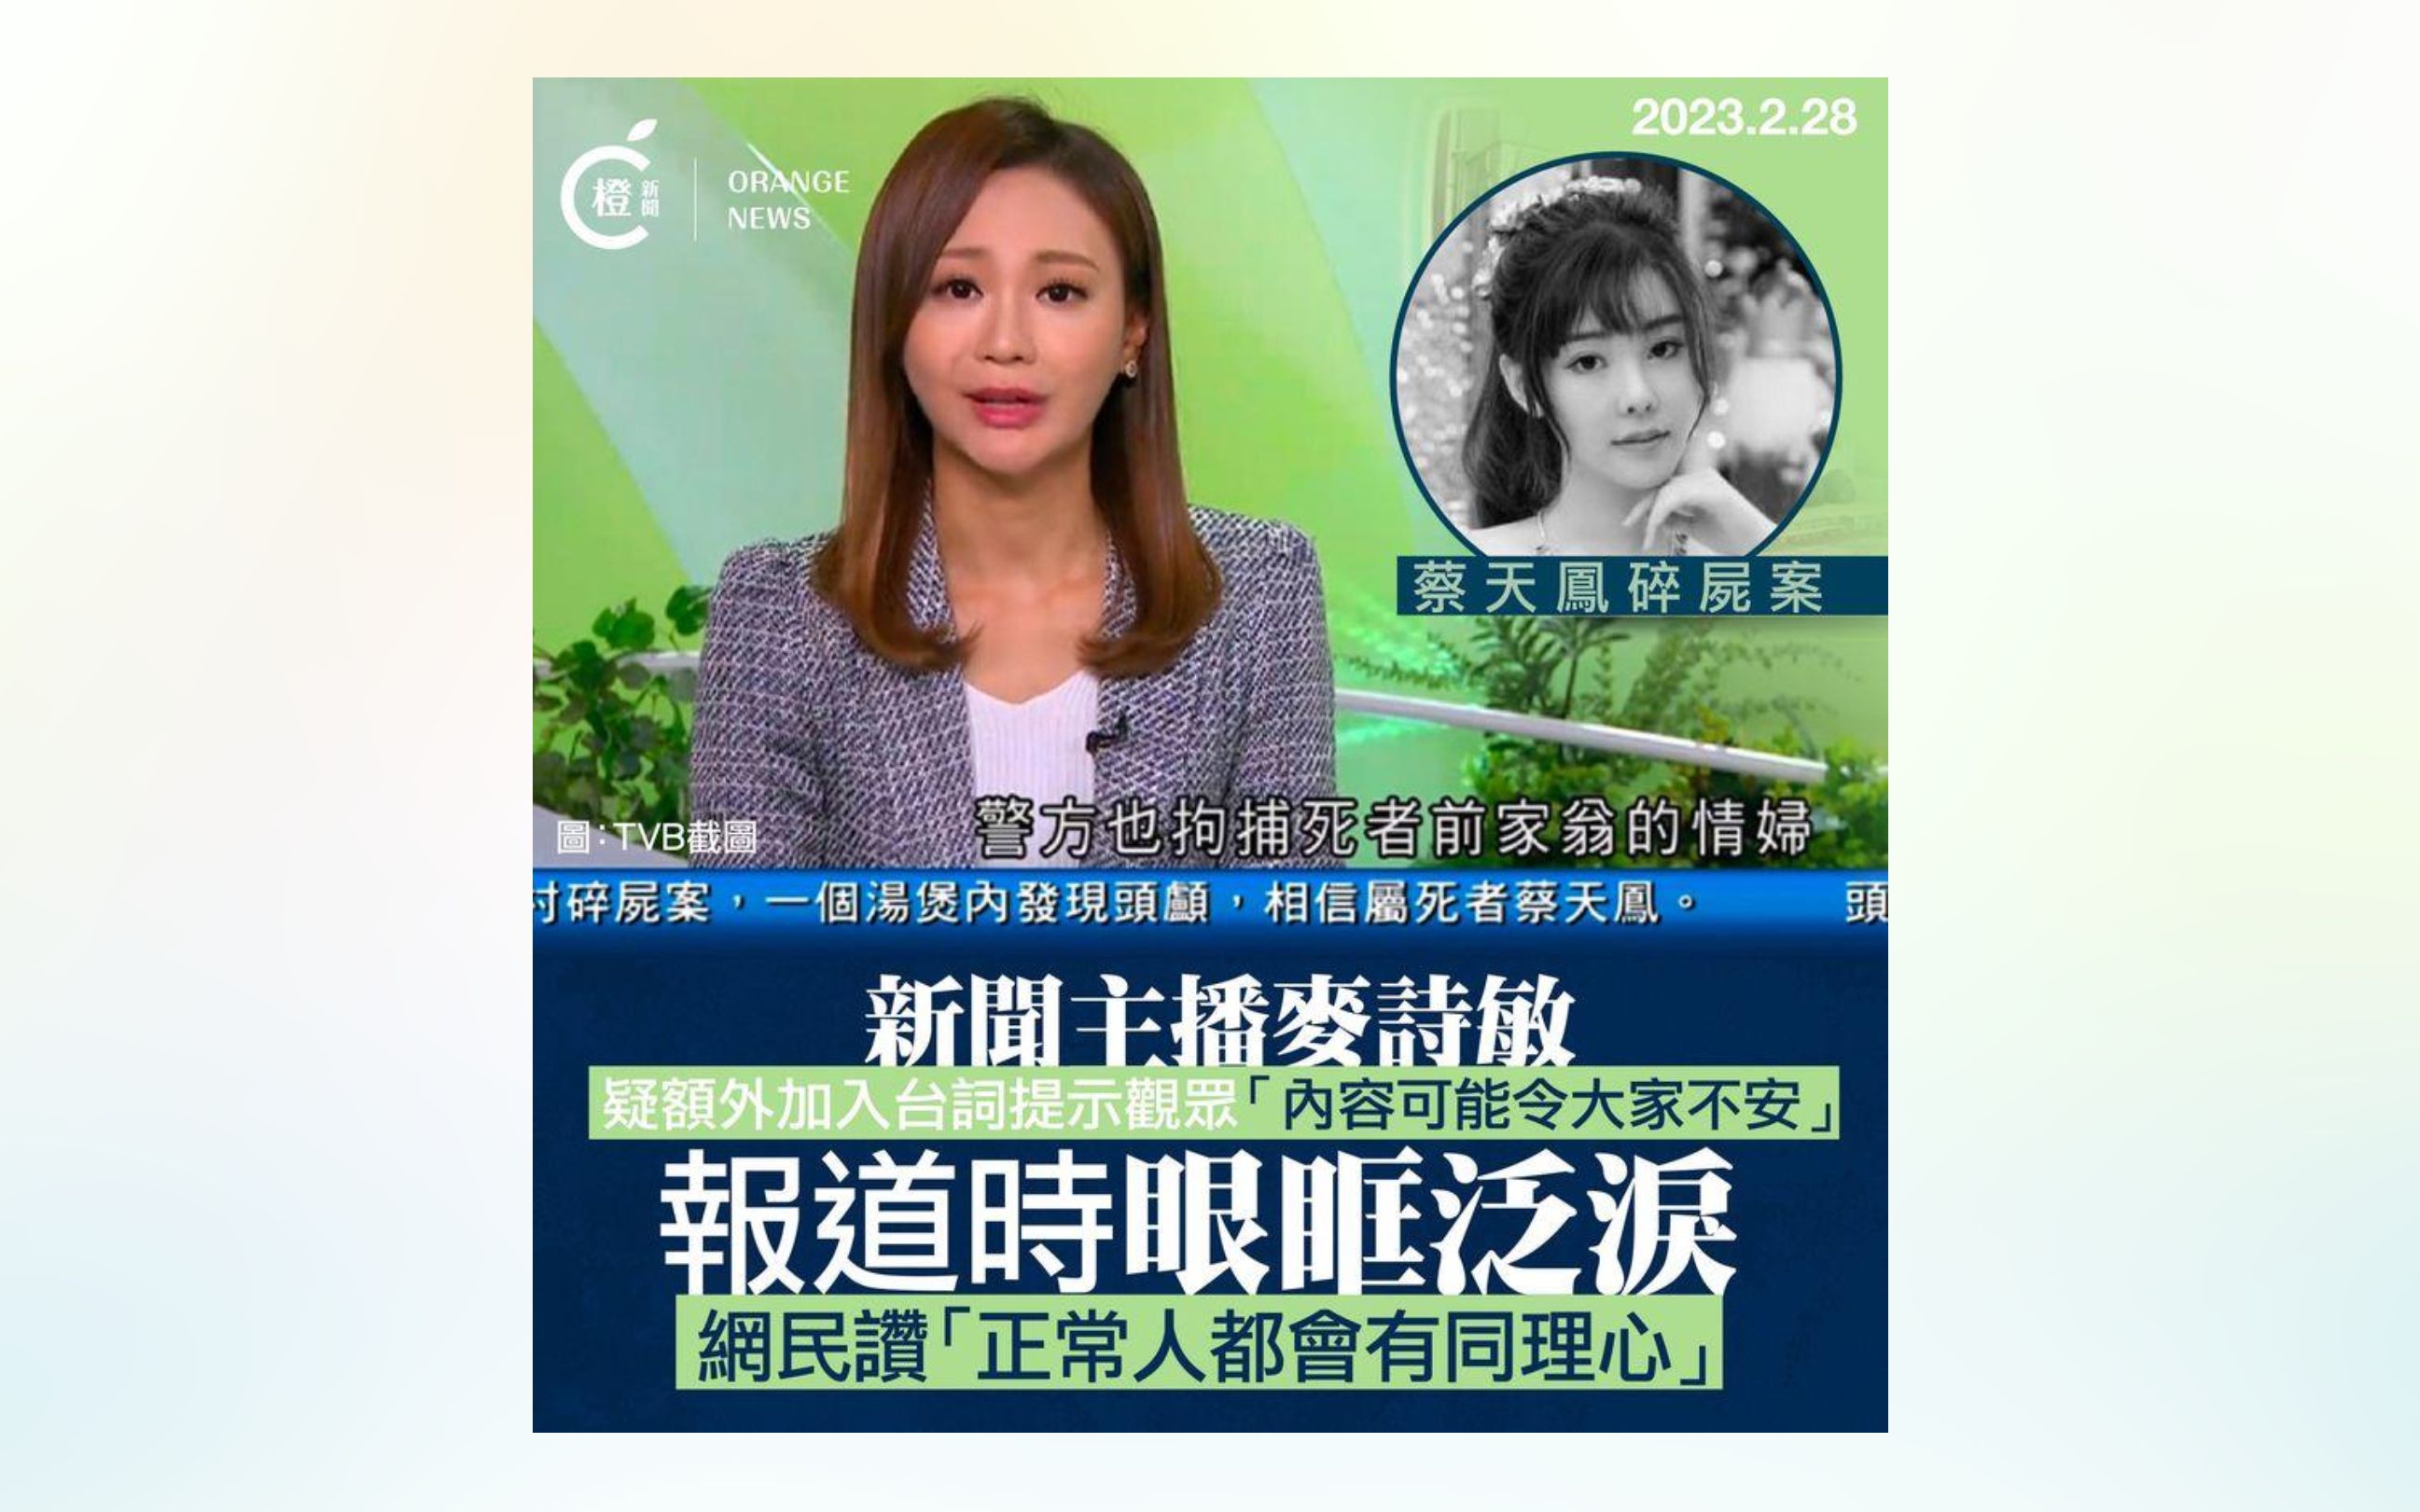 香港名媛蔡天凤遭谋杀!tvb女主播报道时眼眶泛泪